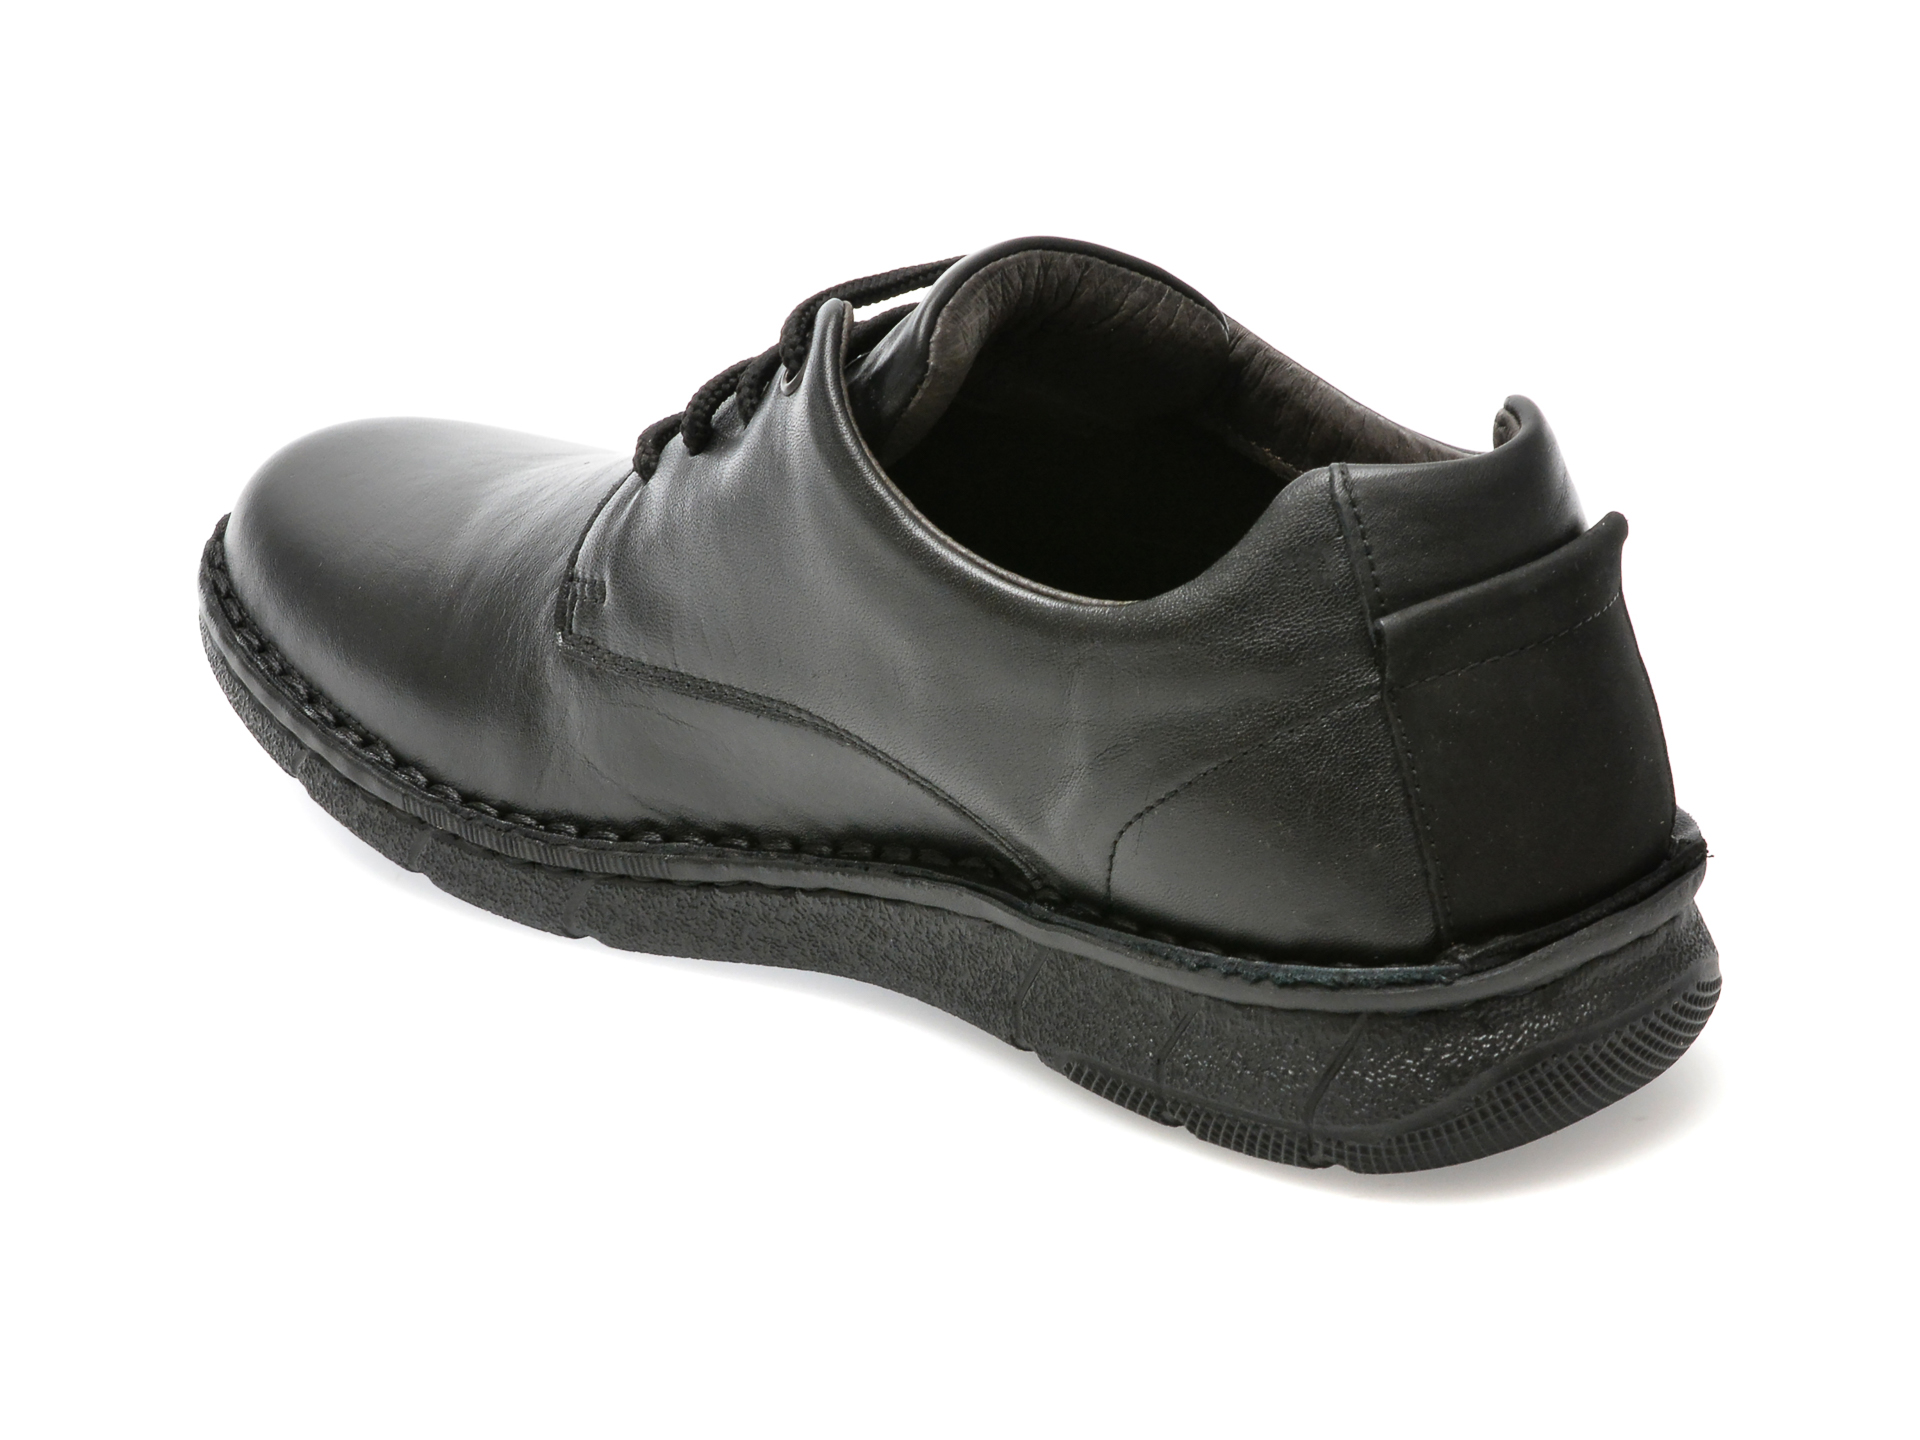 Poze Pantofi OTTER negri, 7728, din piele naturala tezyo.ro